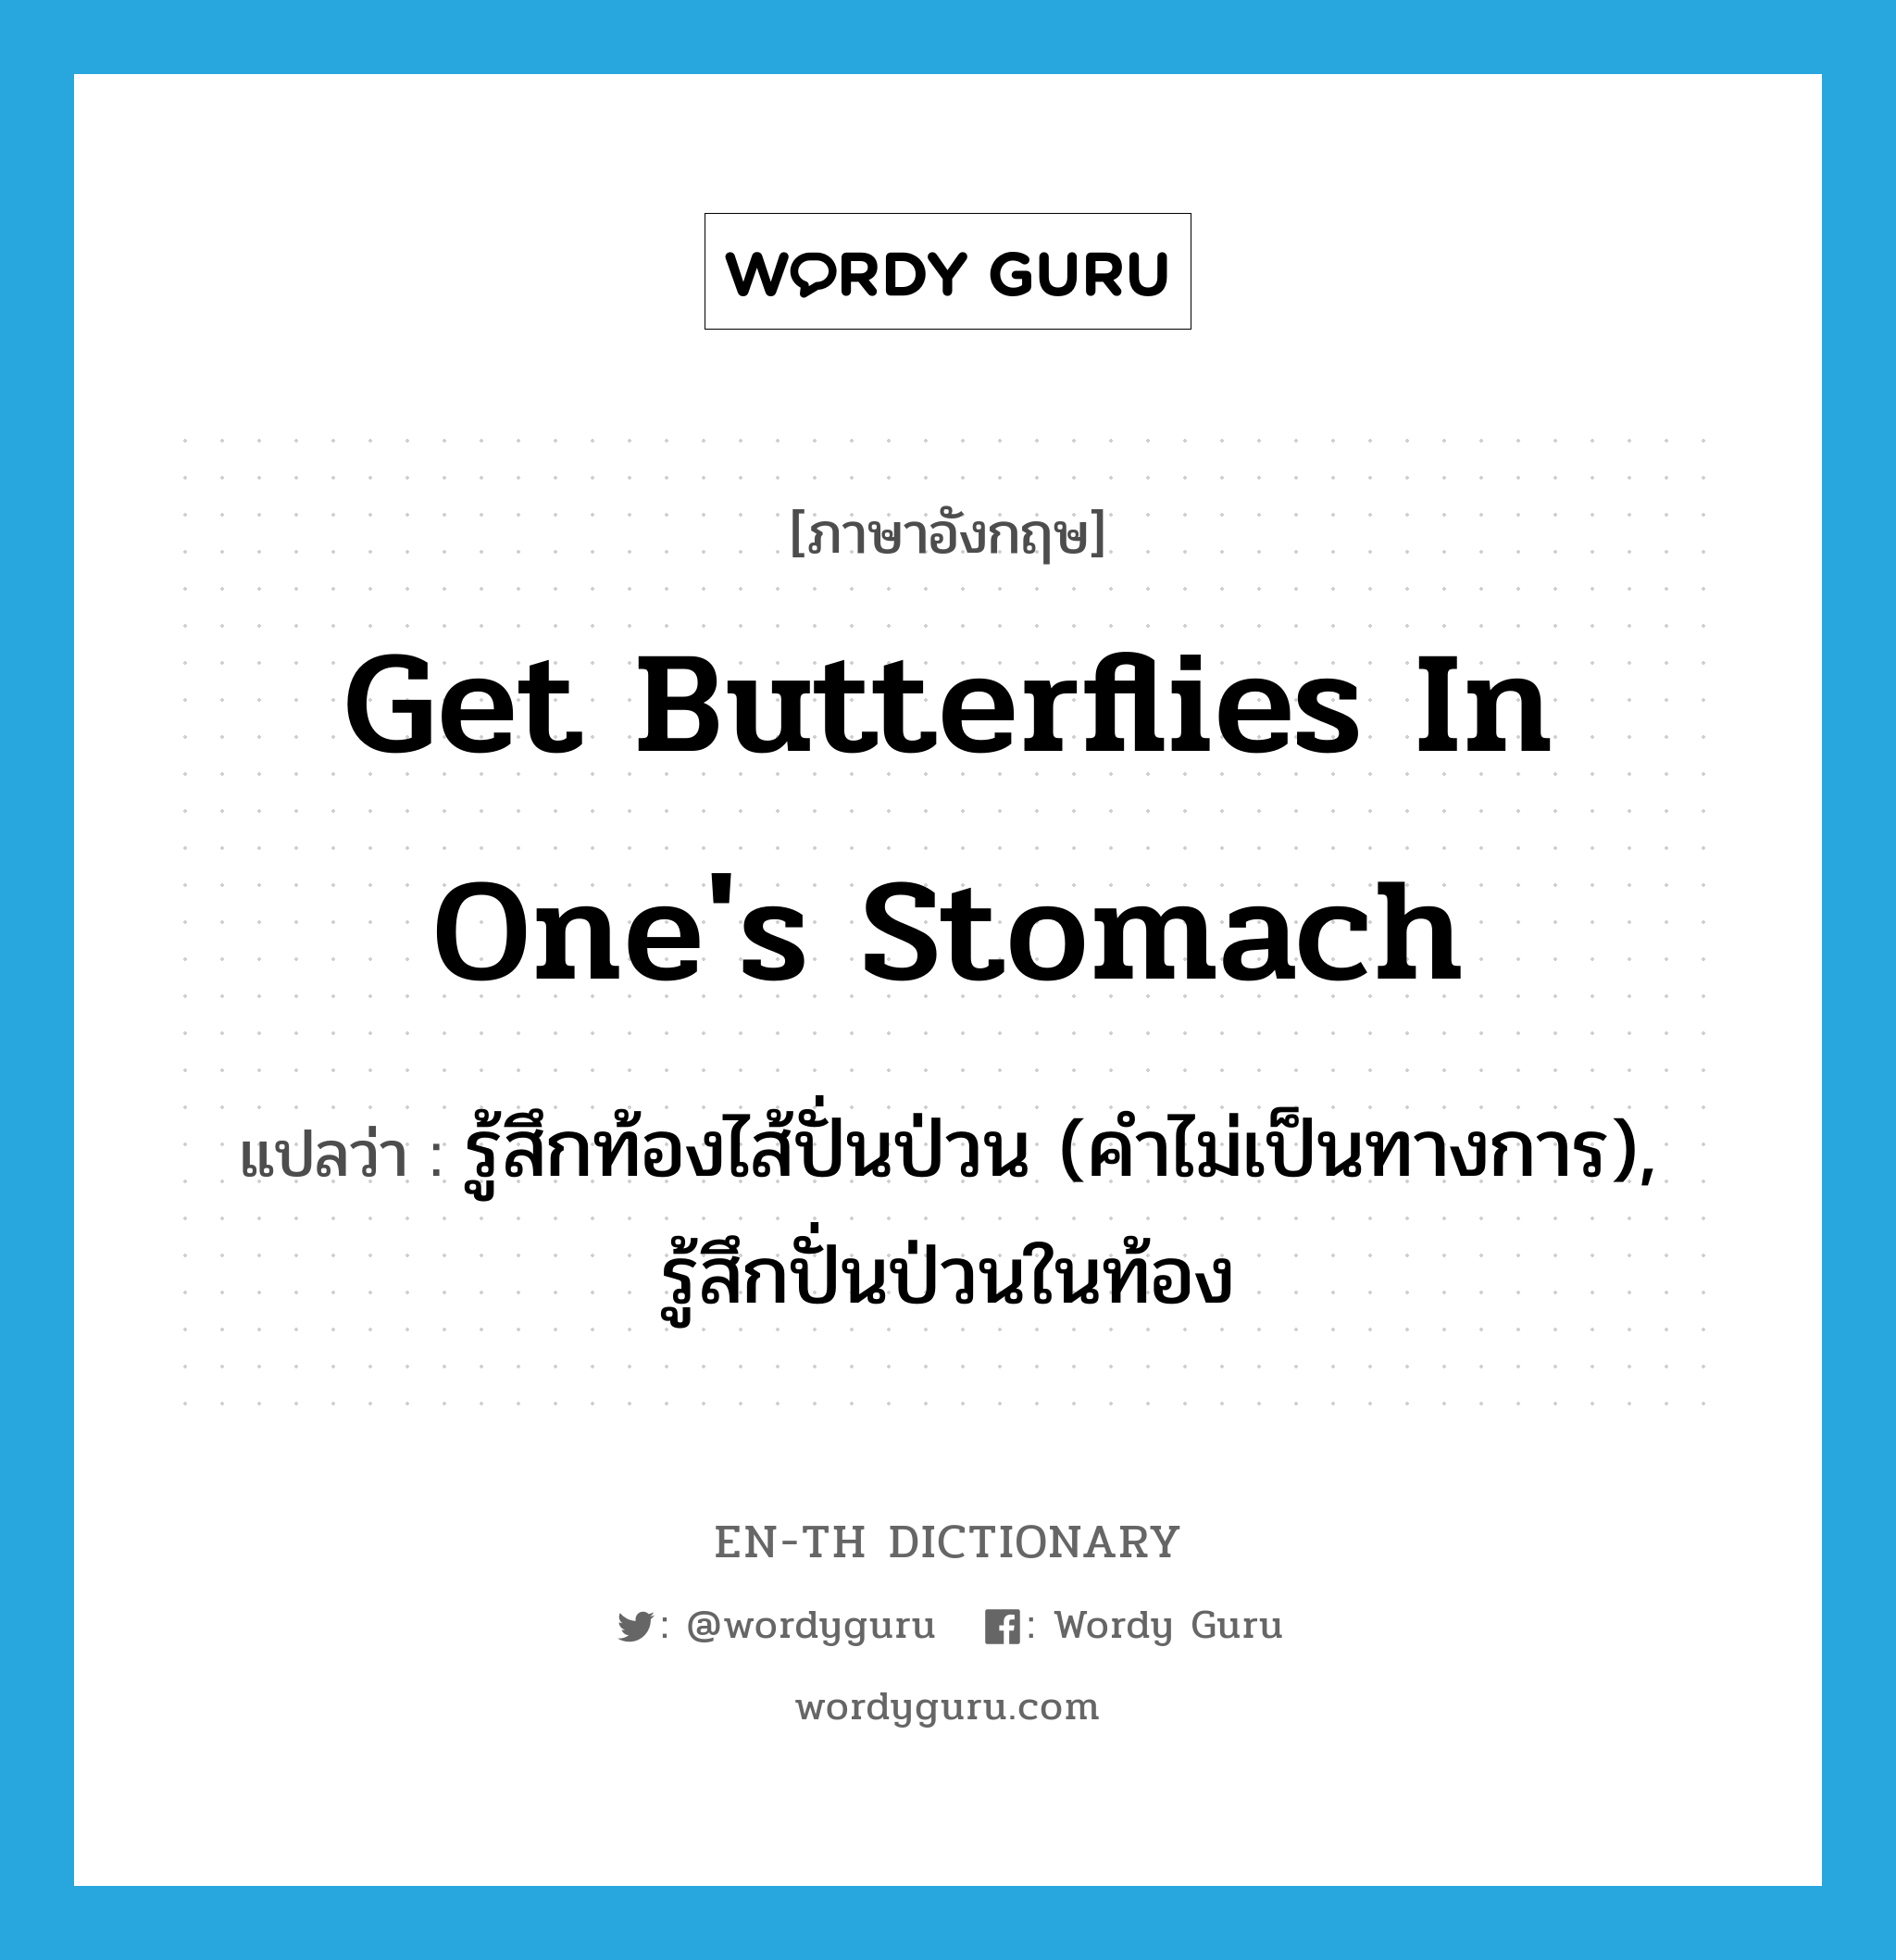 รู้สึกท้องไส้ปั่นป่วน (คำไม่เป็นทางการ), รู้สึกปั่นป่วนในท้อง ภาษาอังกฤษ?, คำศัพท์ภาษาอังกฤษ รู้สึกท้องไส้ปั่นป่วน (คำไม่เป็นทางการ), รู้สึกปั่นป่วนในท้อง แปลว่า get butterflies in one's stomach ประเภท IDM หมวด IDM